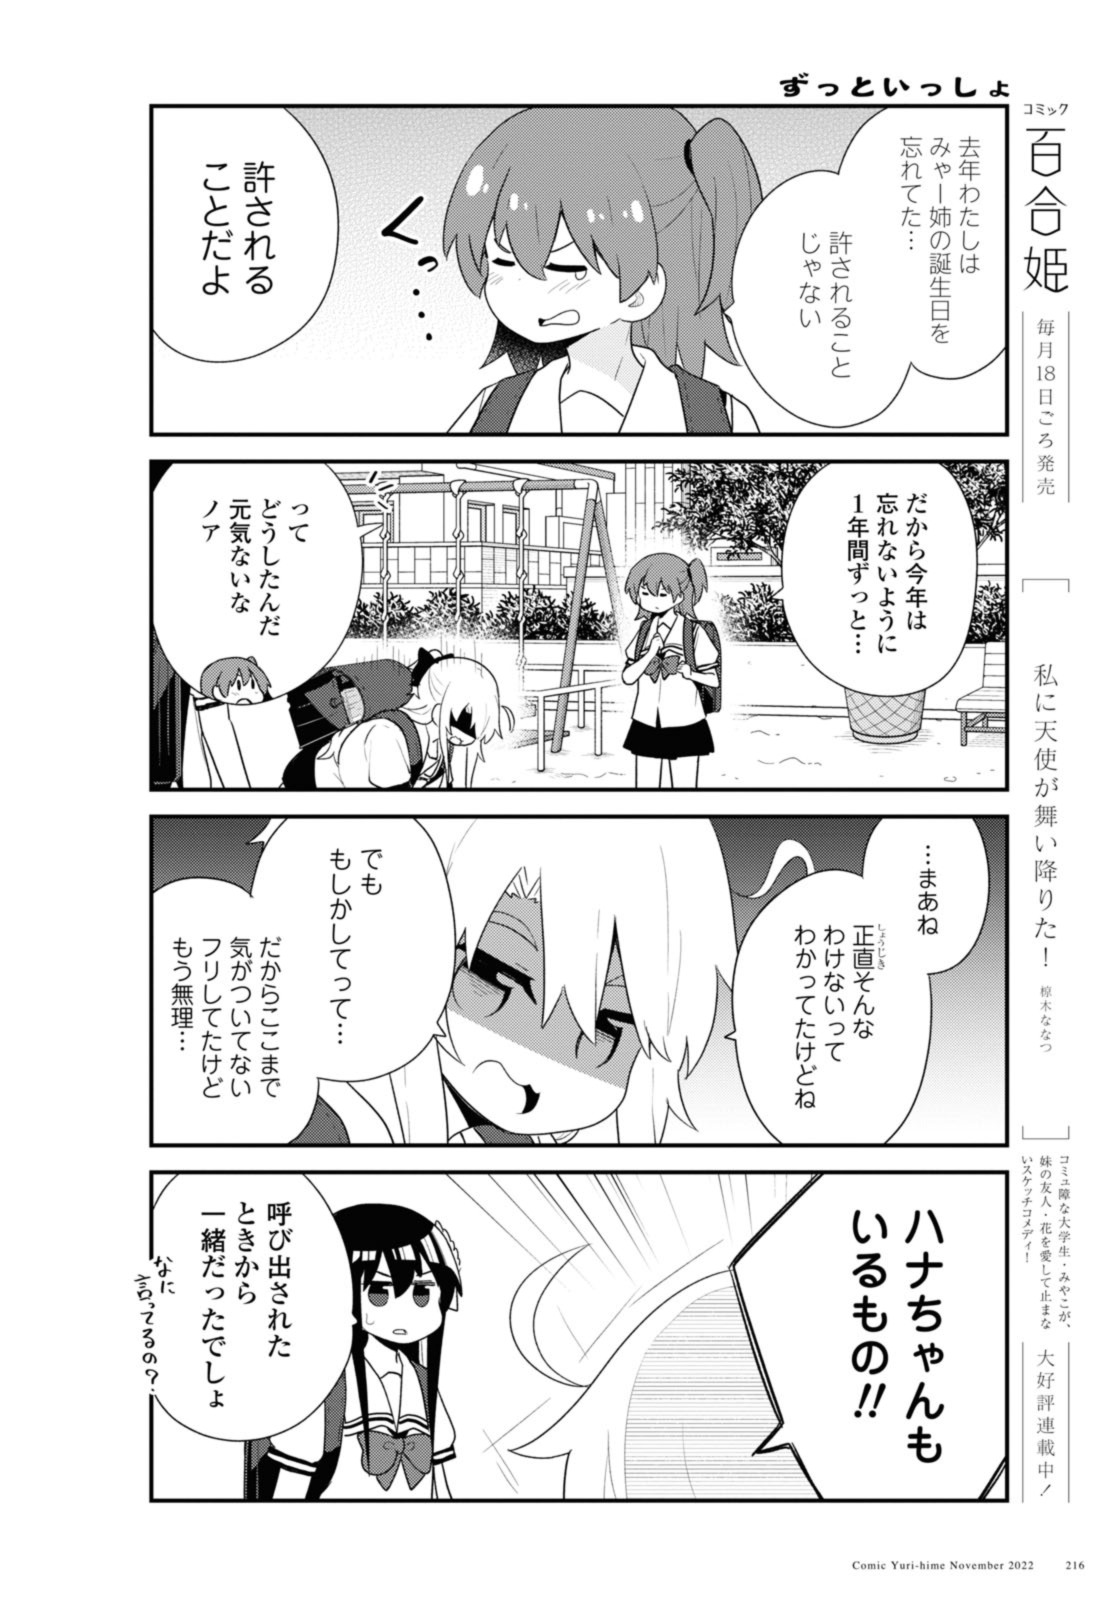 Watashi ni Tenshi ga Maiorita! - Chapter 99 - Page 4